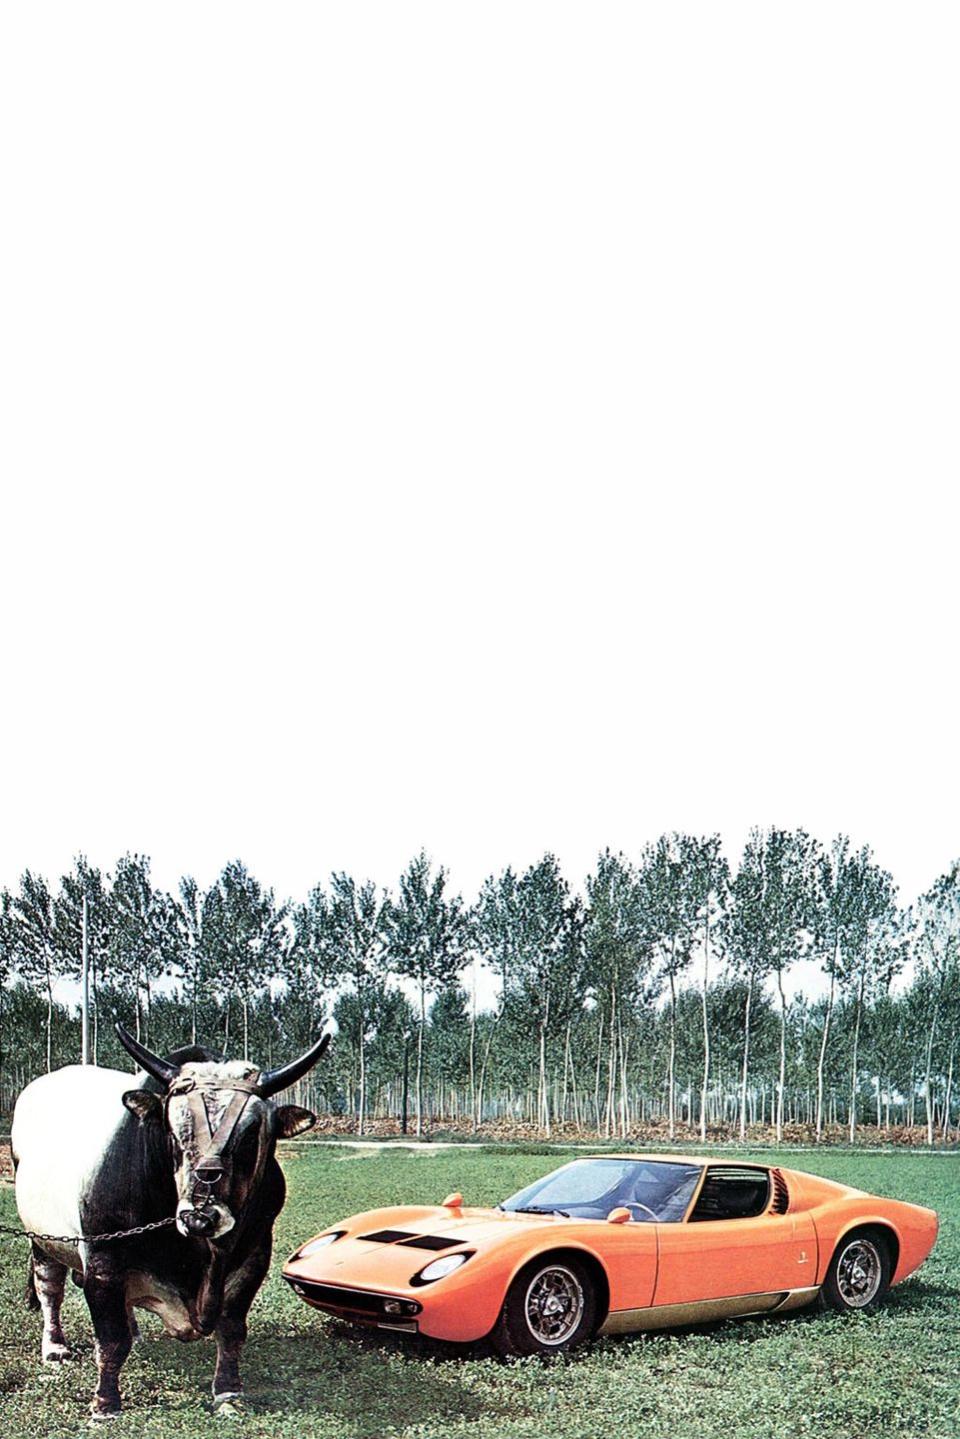 1966: Lamborghini Miura